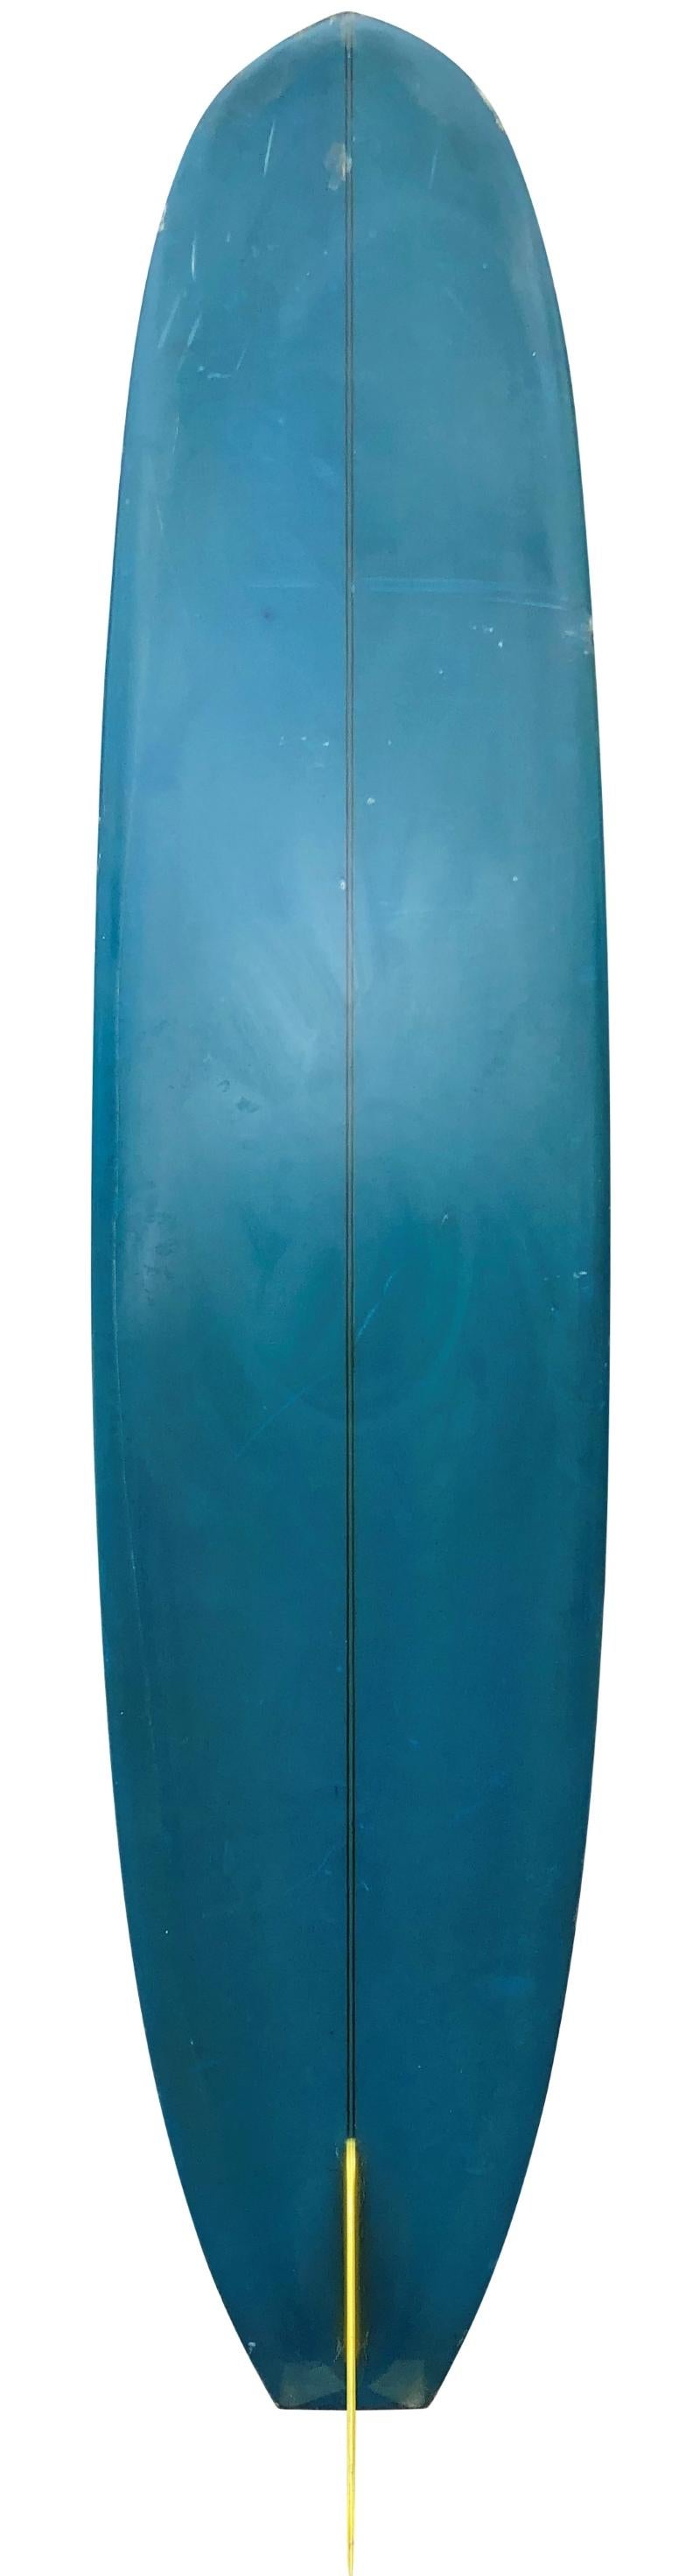 1967 Bing David Nuuhiwa, leichtes Longboard-Modell aus dem Jahr 1967, Seriennummer 8375. Mit schönem, tiefblau getöntem Boden/umwickelten Rails mit Pinline, T-Band-Stringer und Glas-Single-Fin. Ein besonders kurzes Exemplar eines